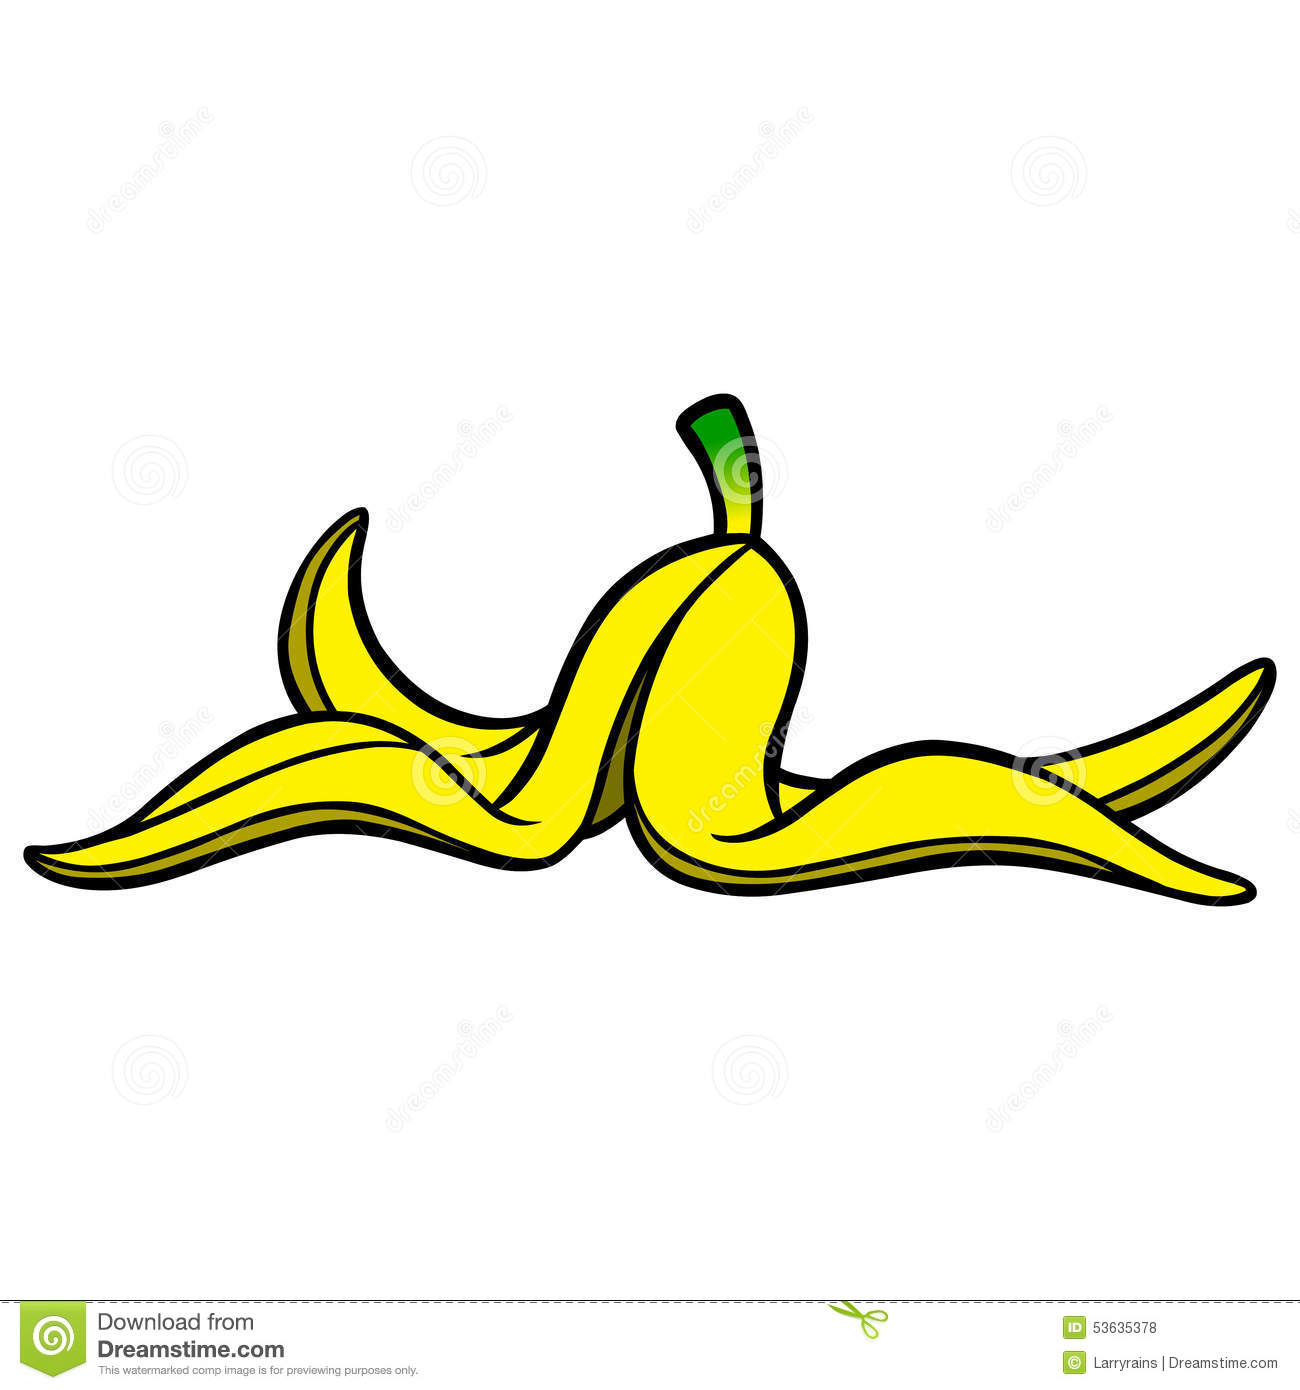 Banana Peel Clipart Banana. Banana Peel Royalty Free Stock .